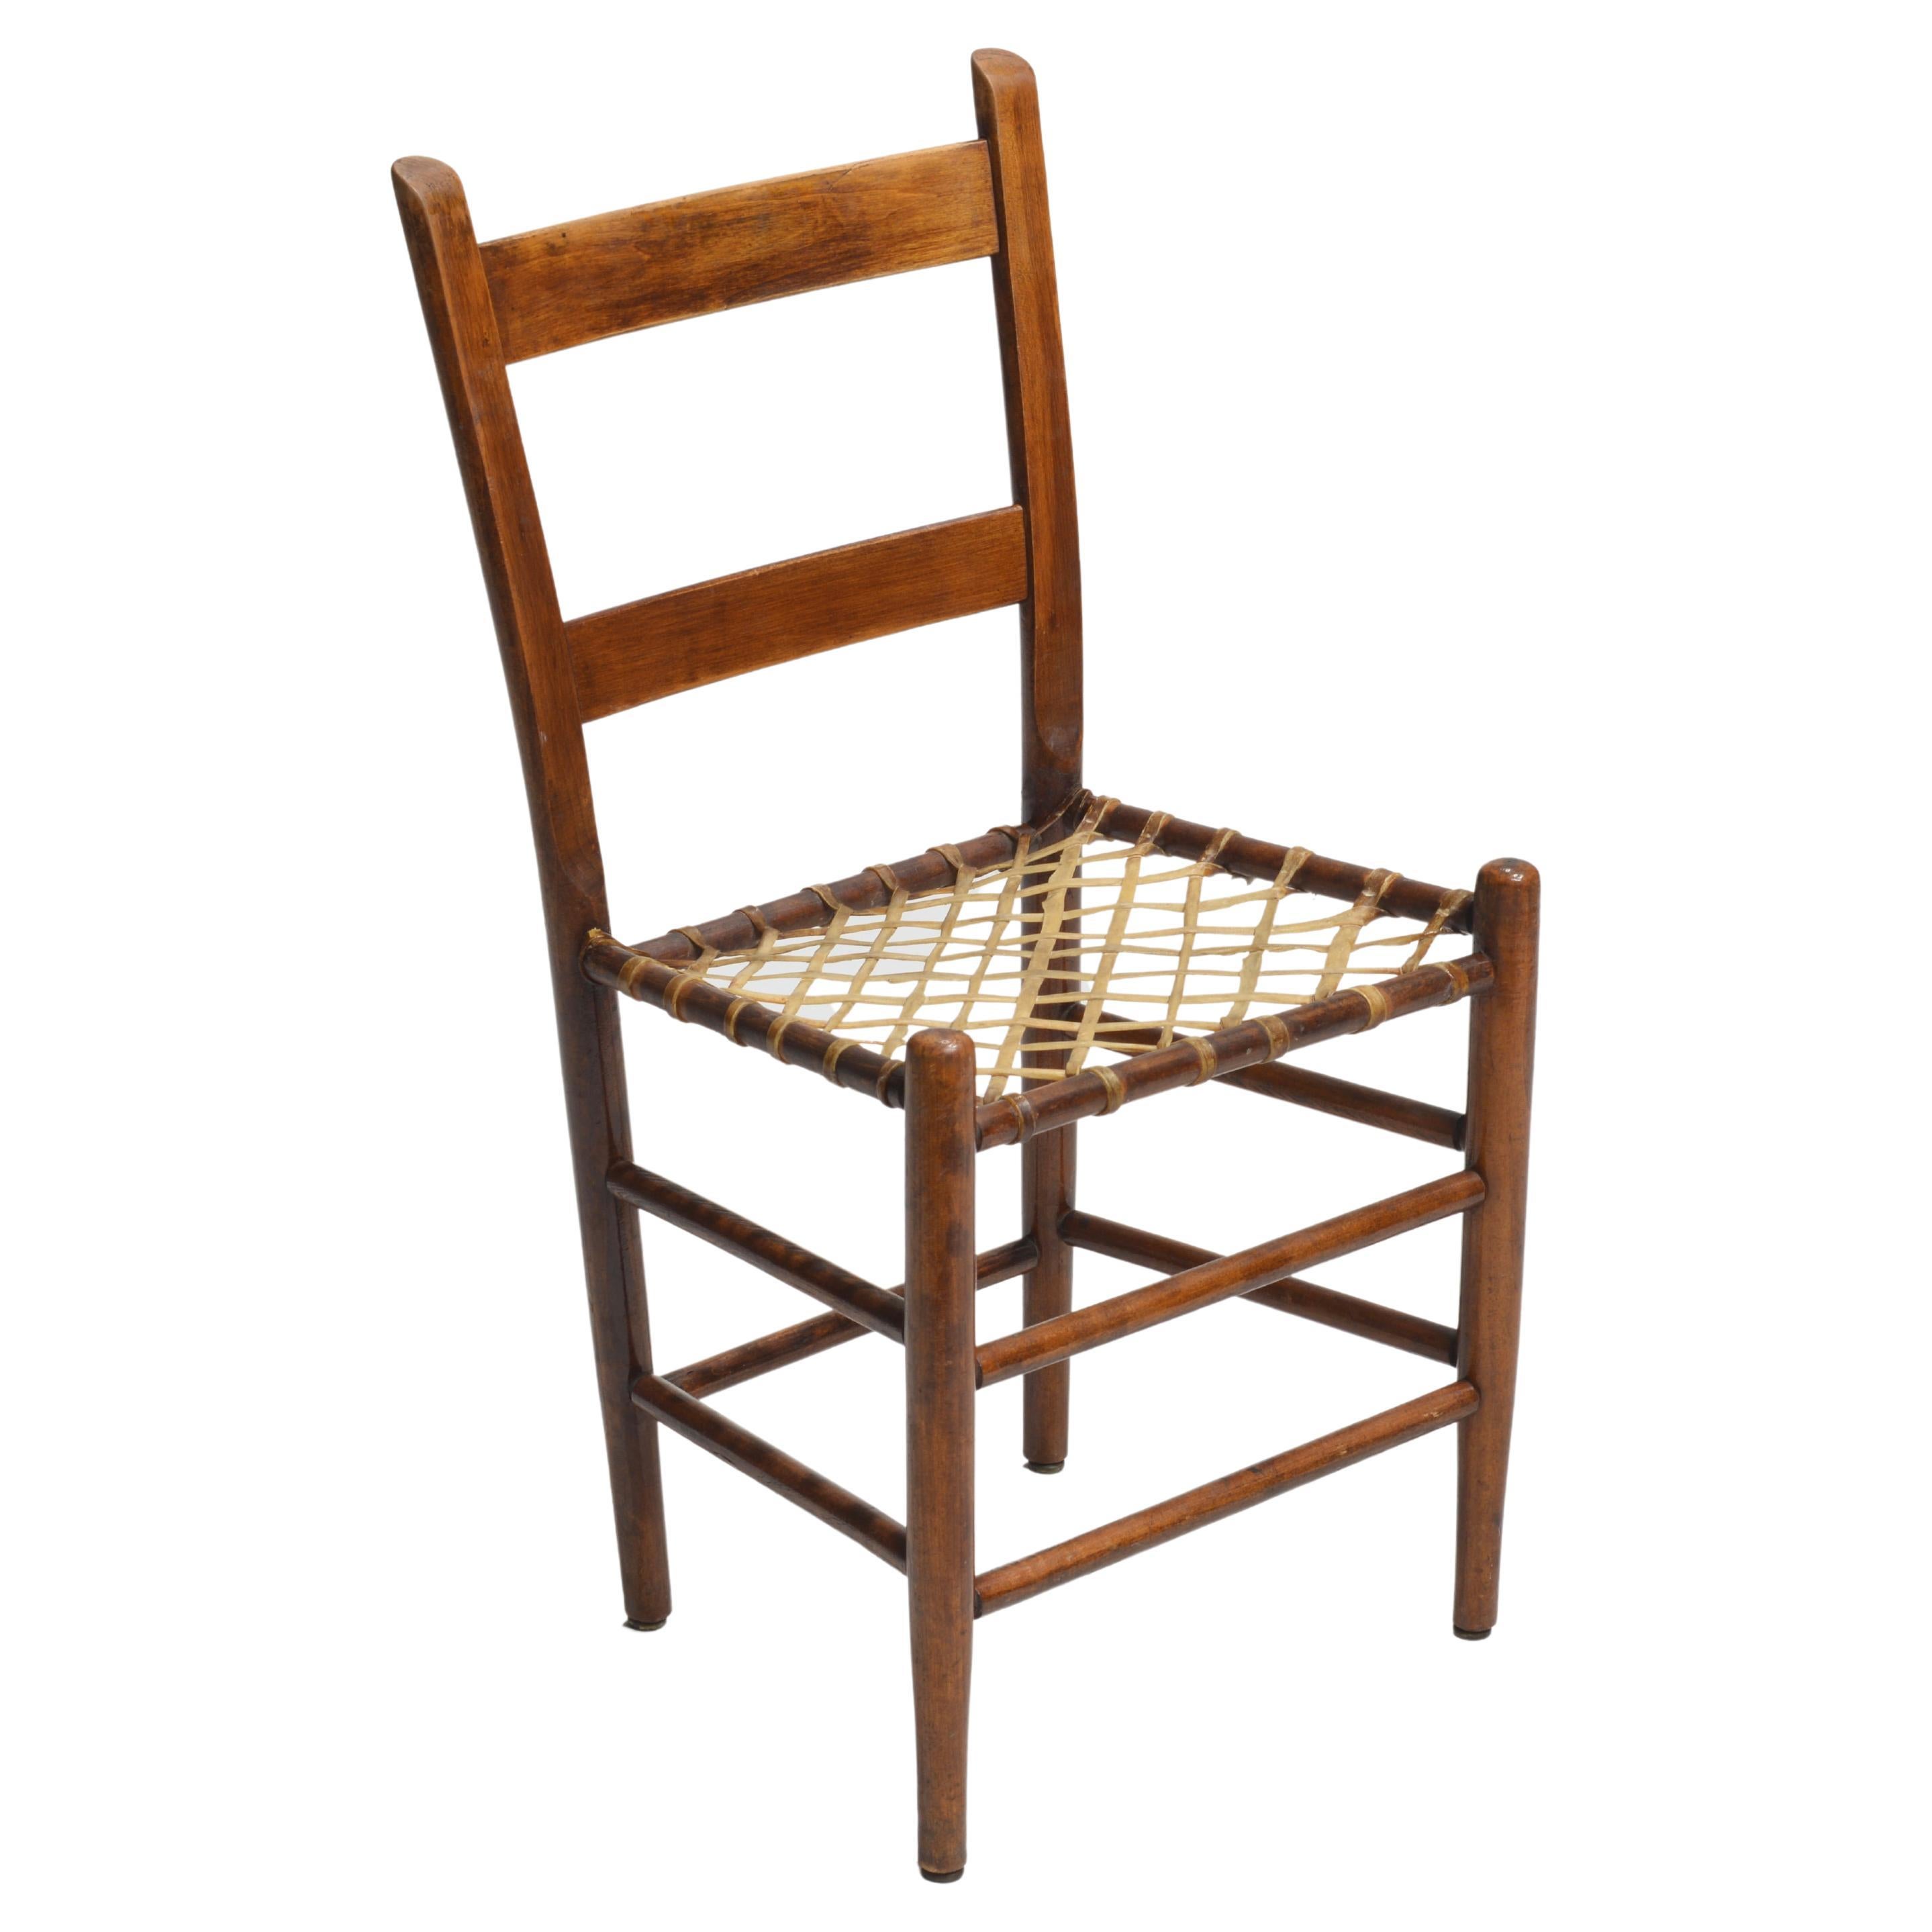 Dies ist ein seltener Satz von 8 handgefertigten hölzernen Esszimmerstühlen mit Sitzflächen aus Rohleder, ca. 1850's. Jeder Stuhl hat eine Leiterrückenlehne mit geflochtenen Sitzflächen aus Rohleder, und die Sägespuren sind deutlich sichtbar. Diese